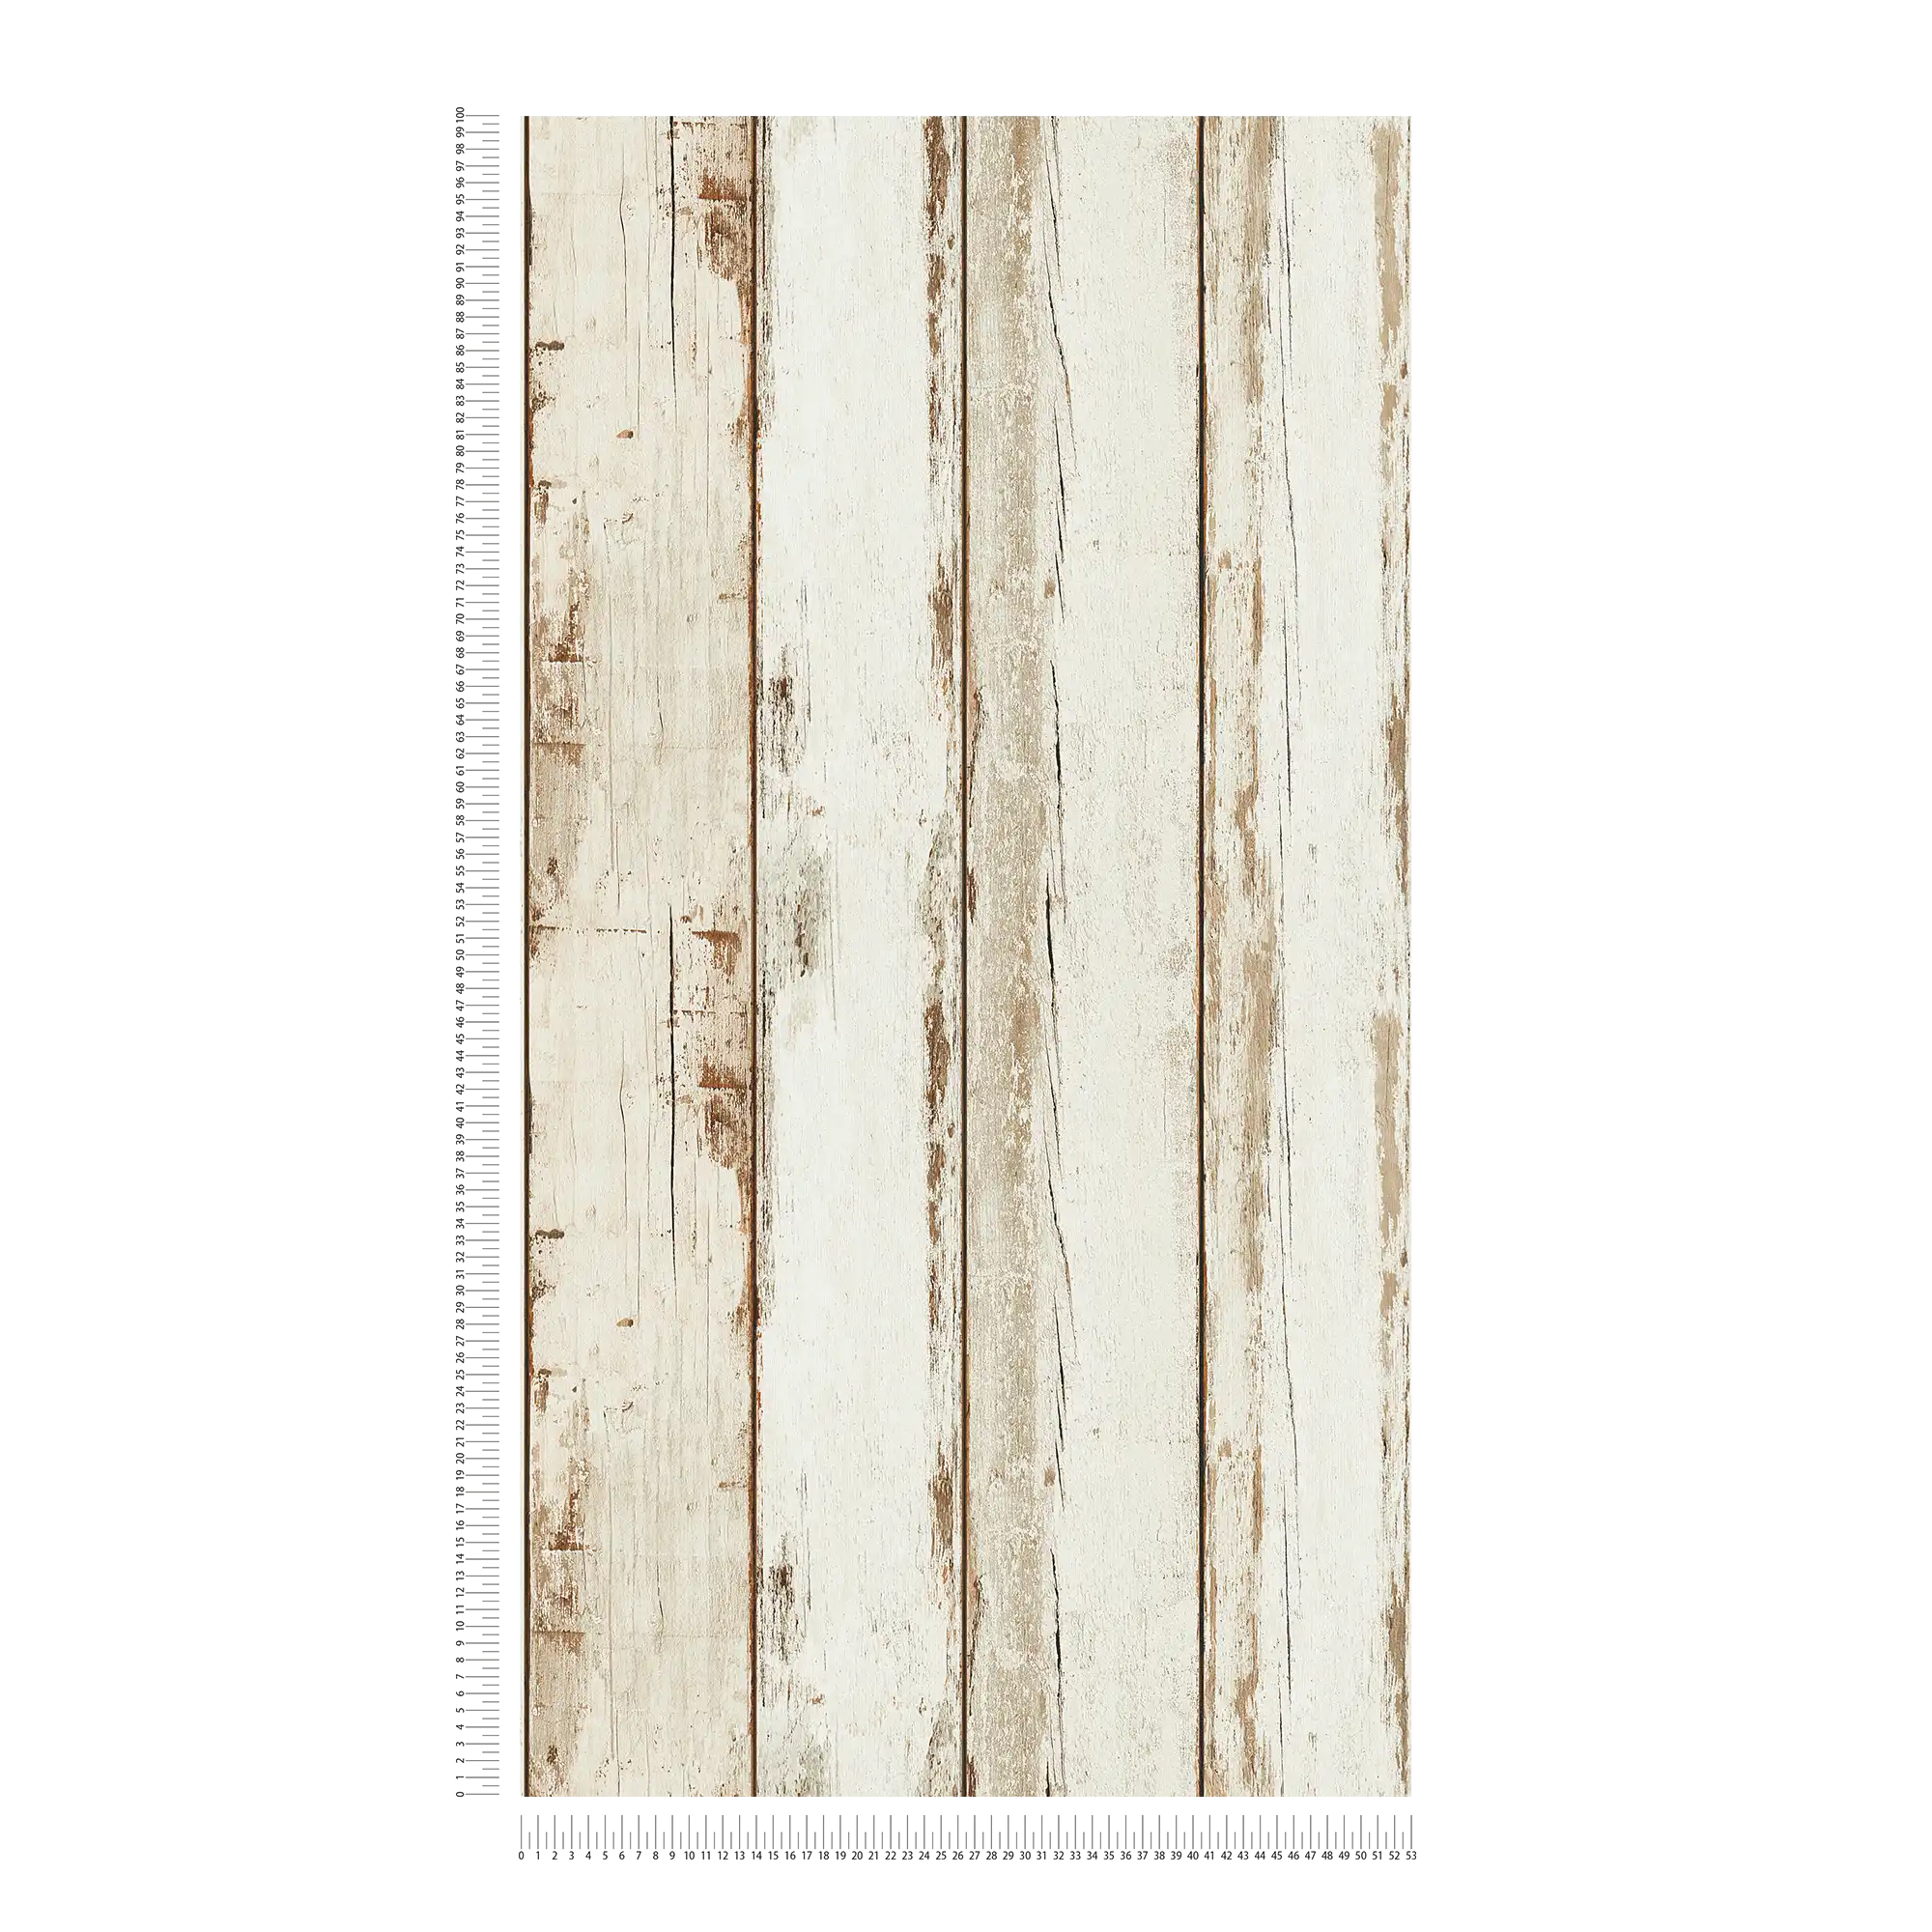             Papier peint bois vintage, aspect usé, style rustique - crème, marron
        